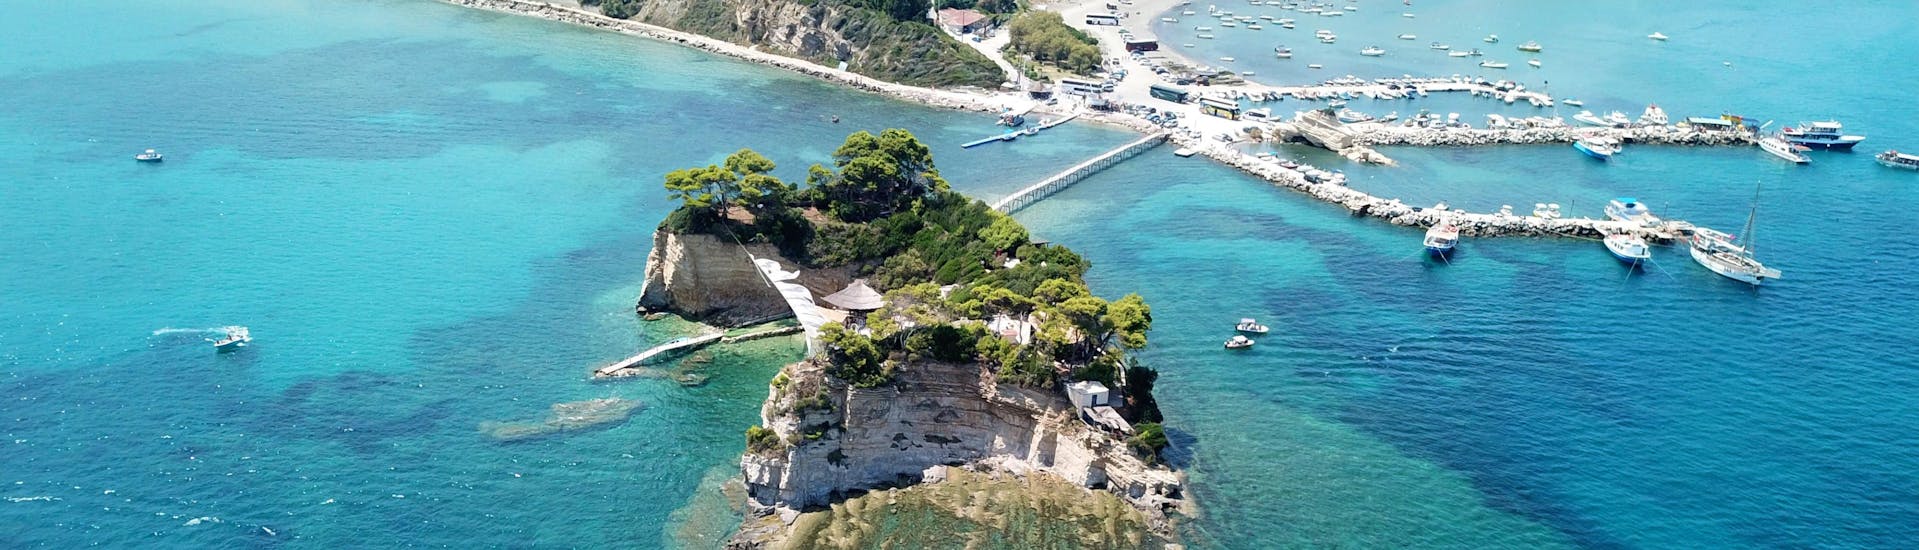 Vista superior de la bahía de Laganas, Zakynthos, con el puente de madera hacia la isla Cameo. 